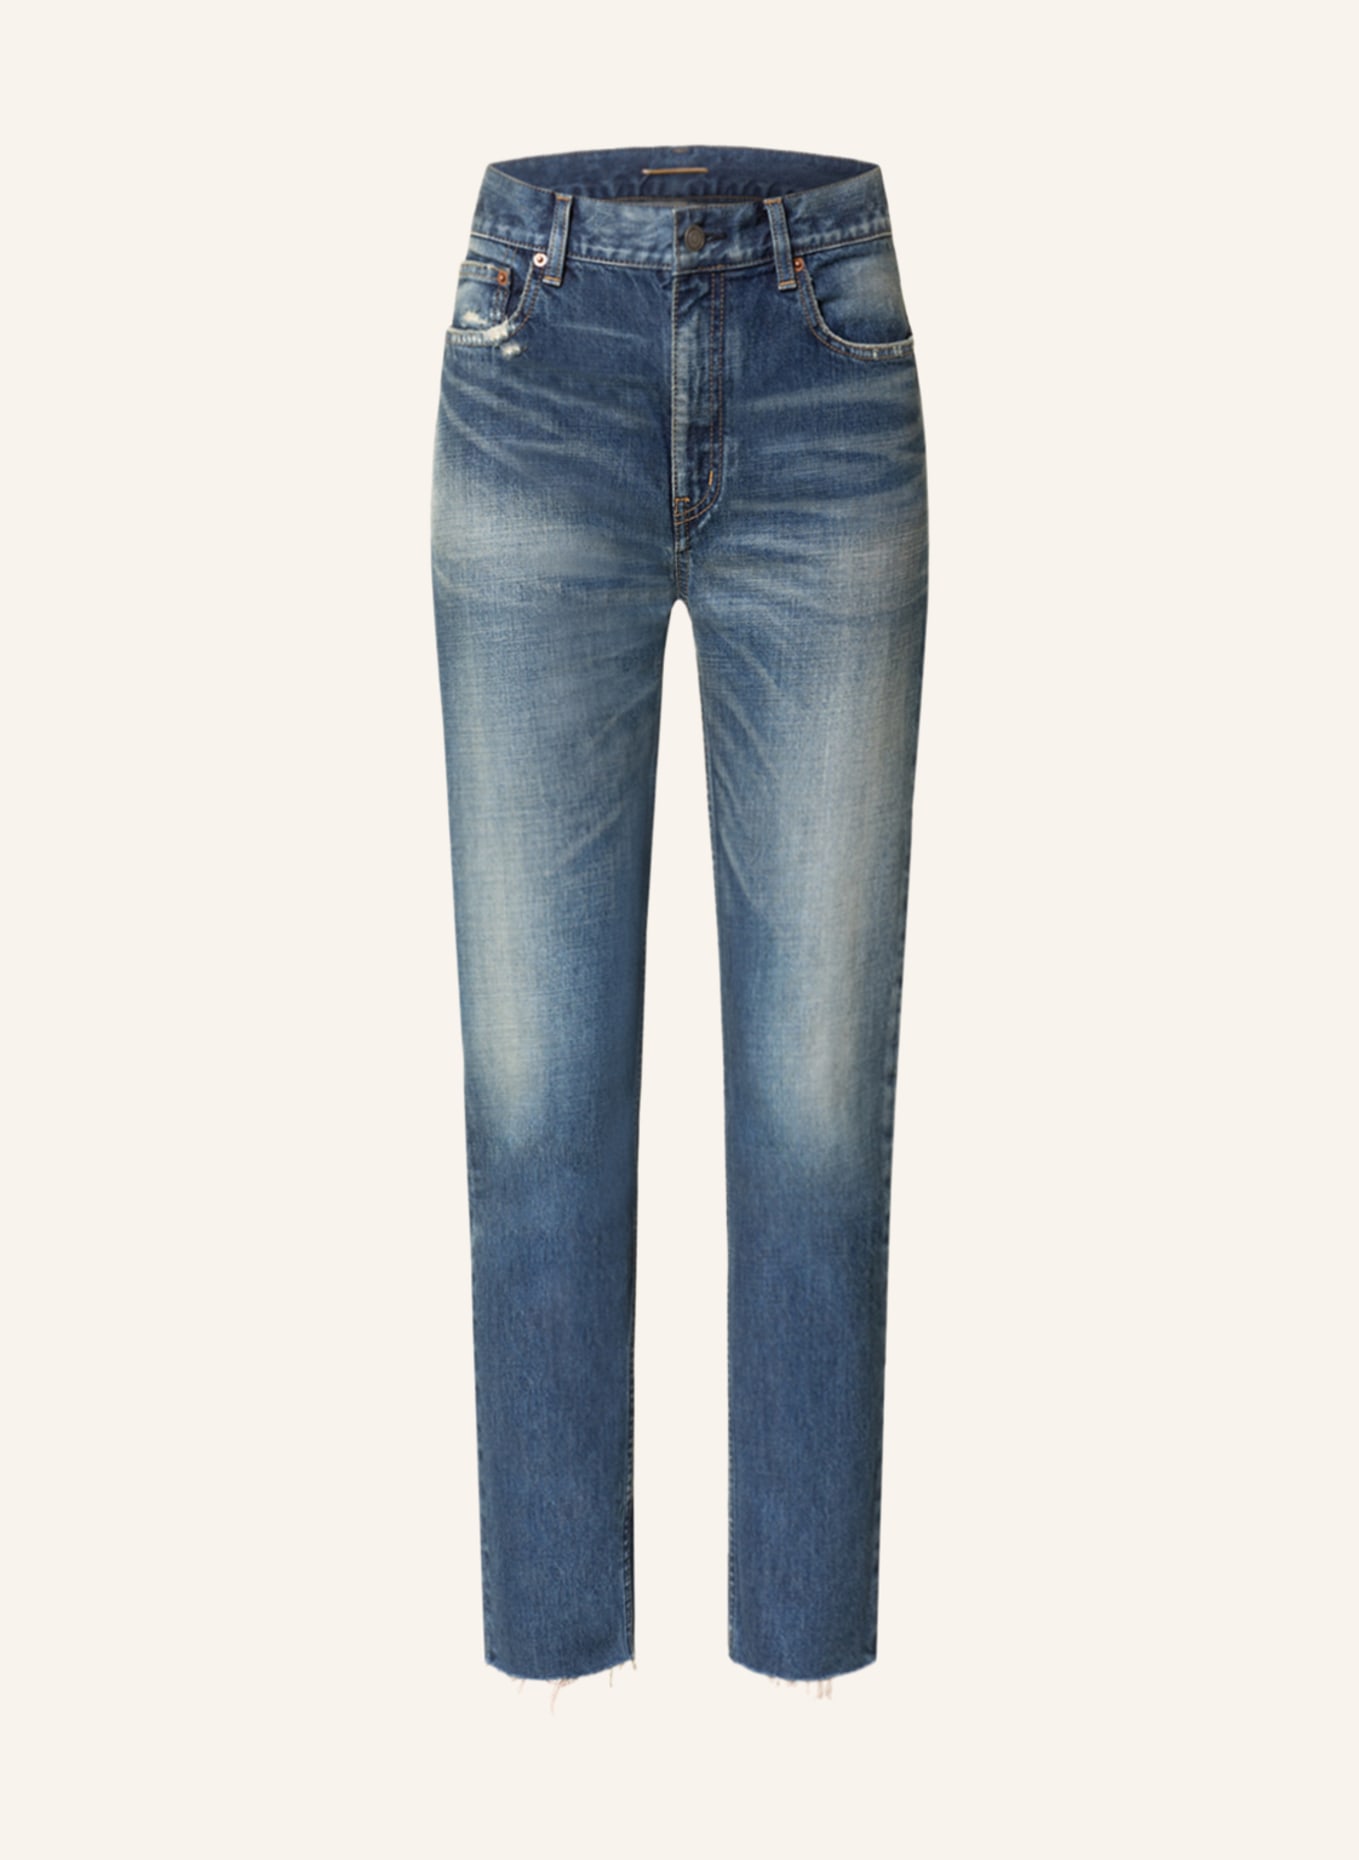 SAINT LAURENT Straight Jeans, Farbe: 4296 AUTHENTIC VINTAGE BL (Bild 1)